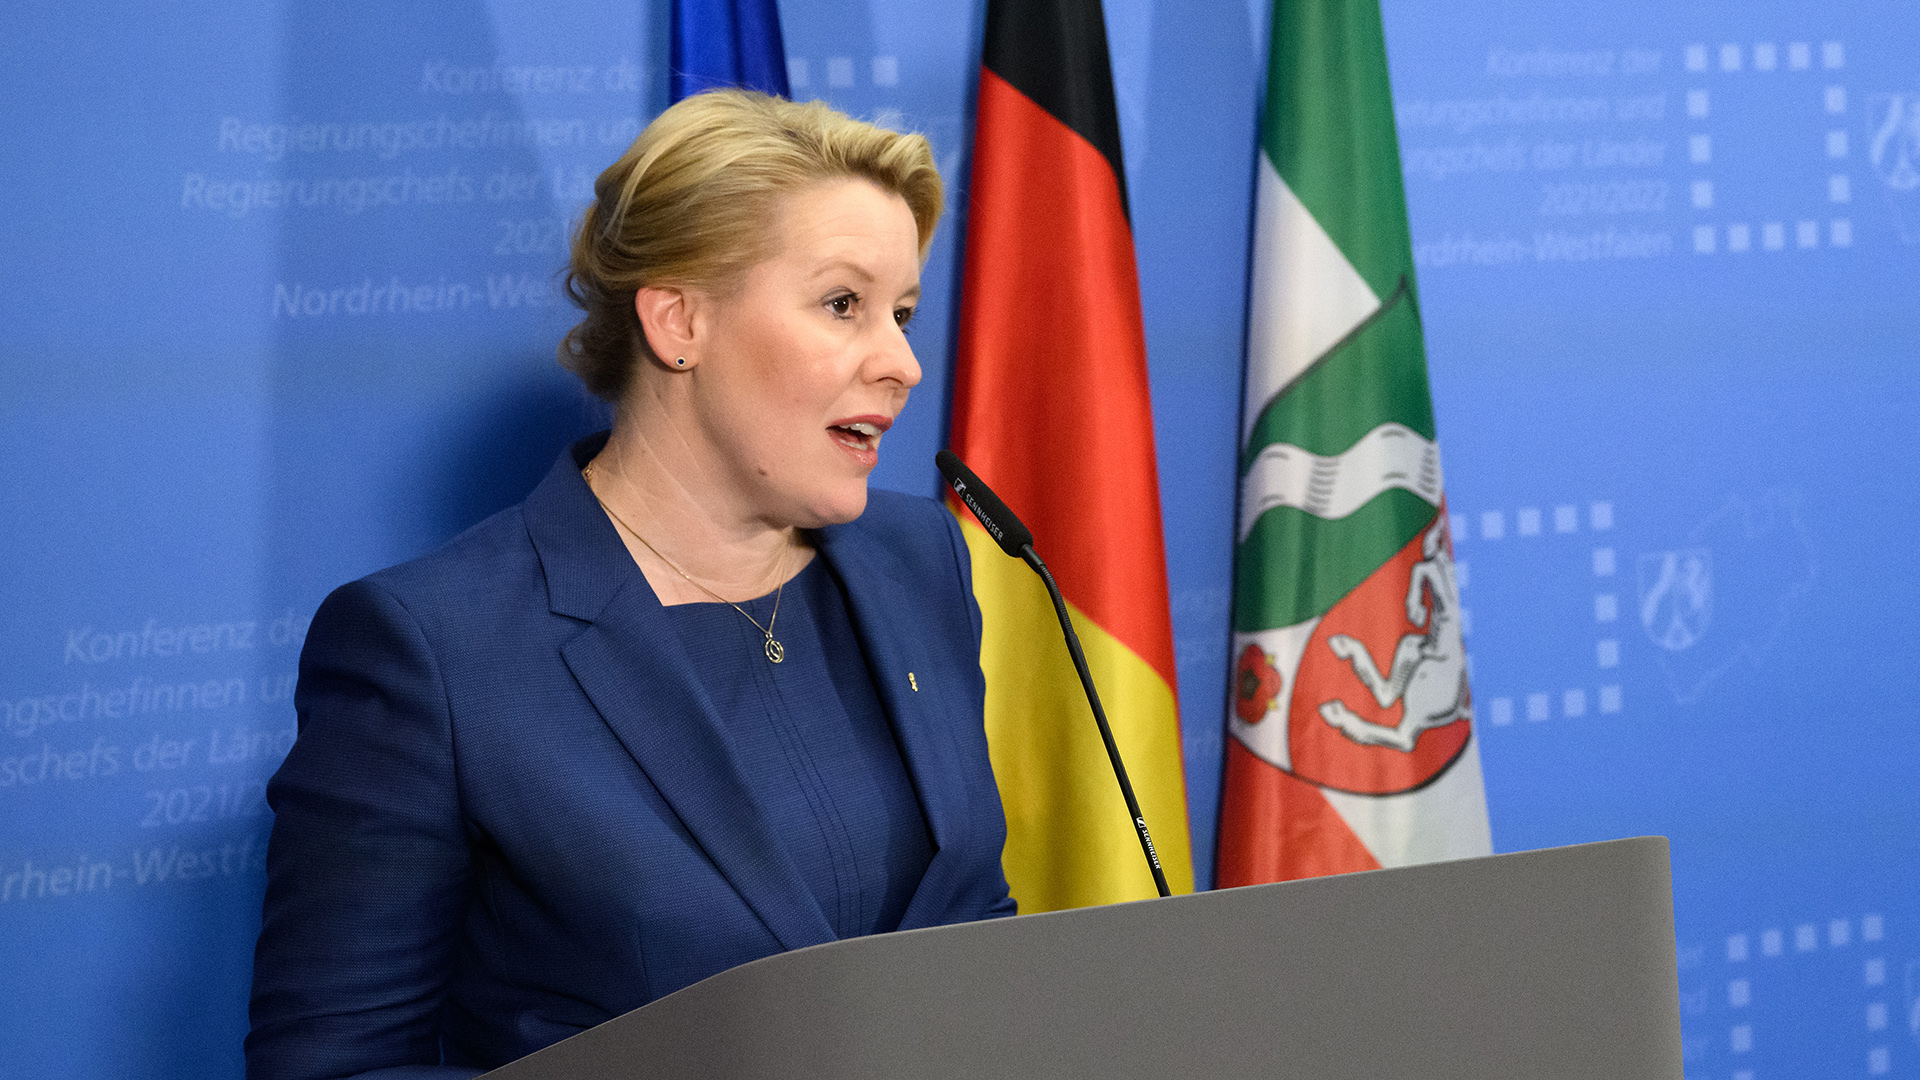 Franziska Giffey (SPD), Regierende Bürgermeisterin von Berlin, äußert sich bei einer Pressekonferenz nach der Ministerpräsidentenkonferenz (MPK) in der NRW-Landesvertretung. (Quelle: dpa/B. Jutrczenka)